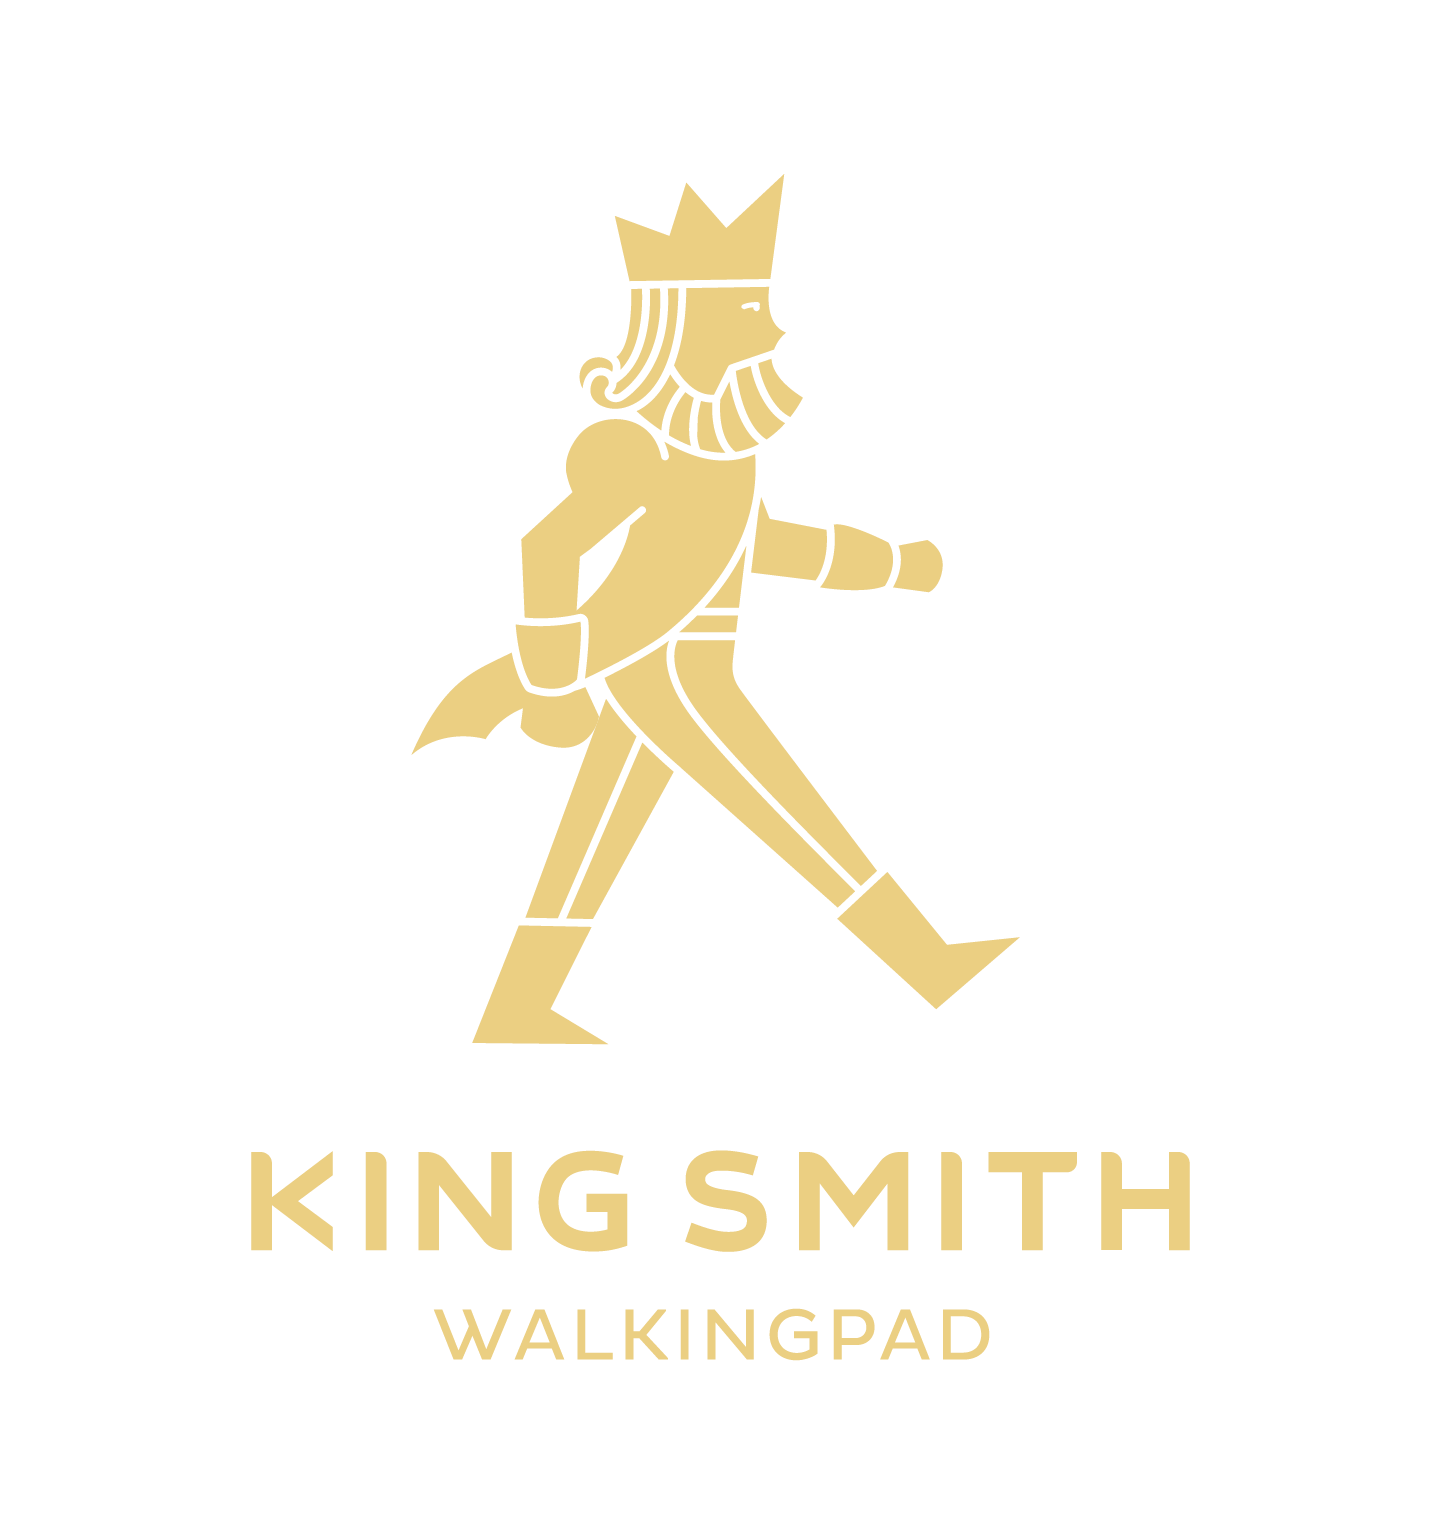 King Smith Walking Pad logo